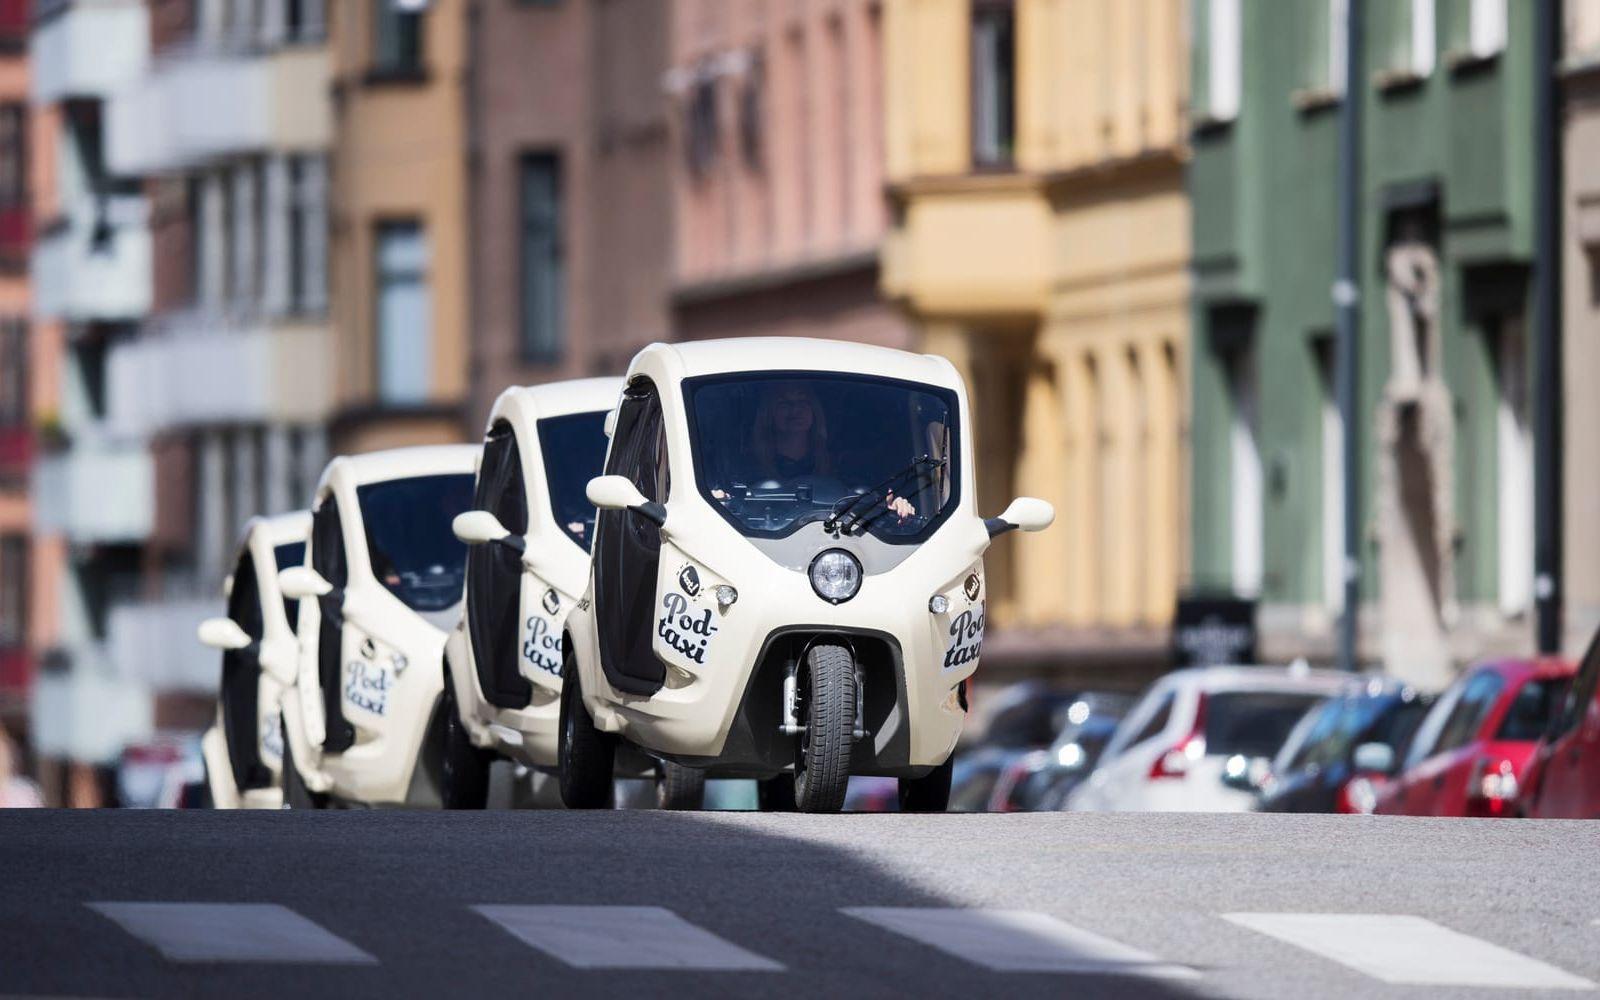 Premiär. Under onsdagen lanseras Bzzt i Stockholm med 18 elmopeder som tillverkats i Trollhättan. Antalet kommer att öka inom kort med ytterligare sex. Bild Nils Petter Nilsson